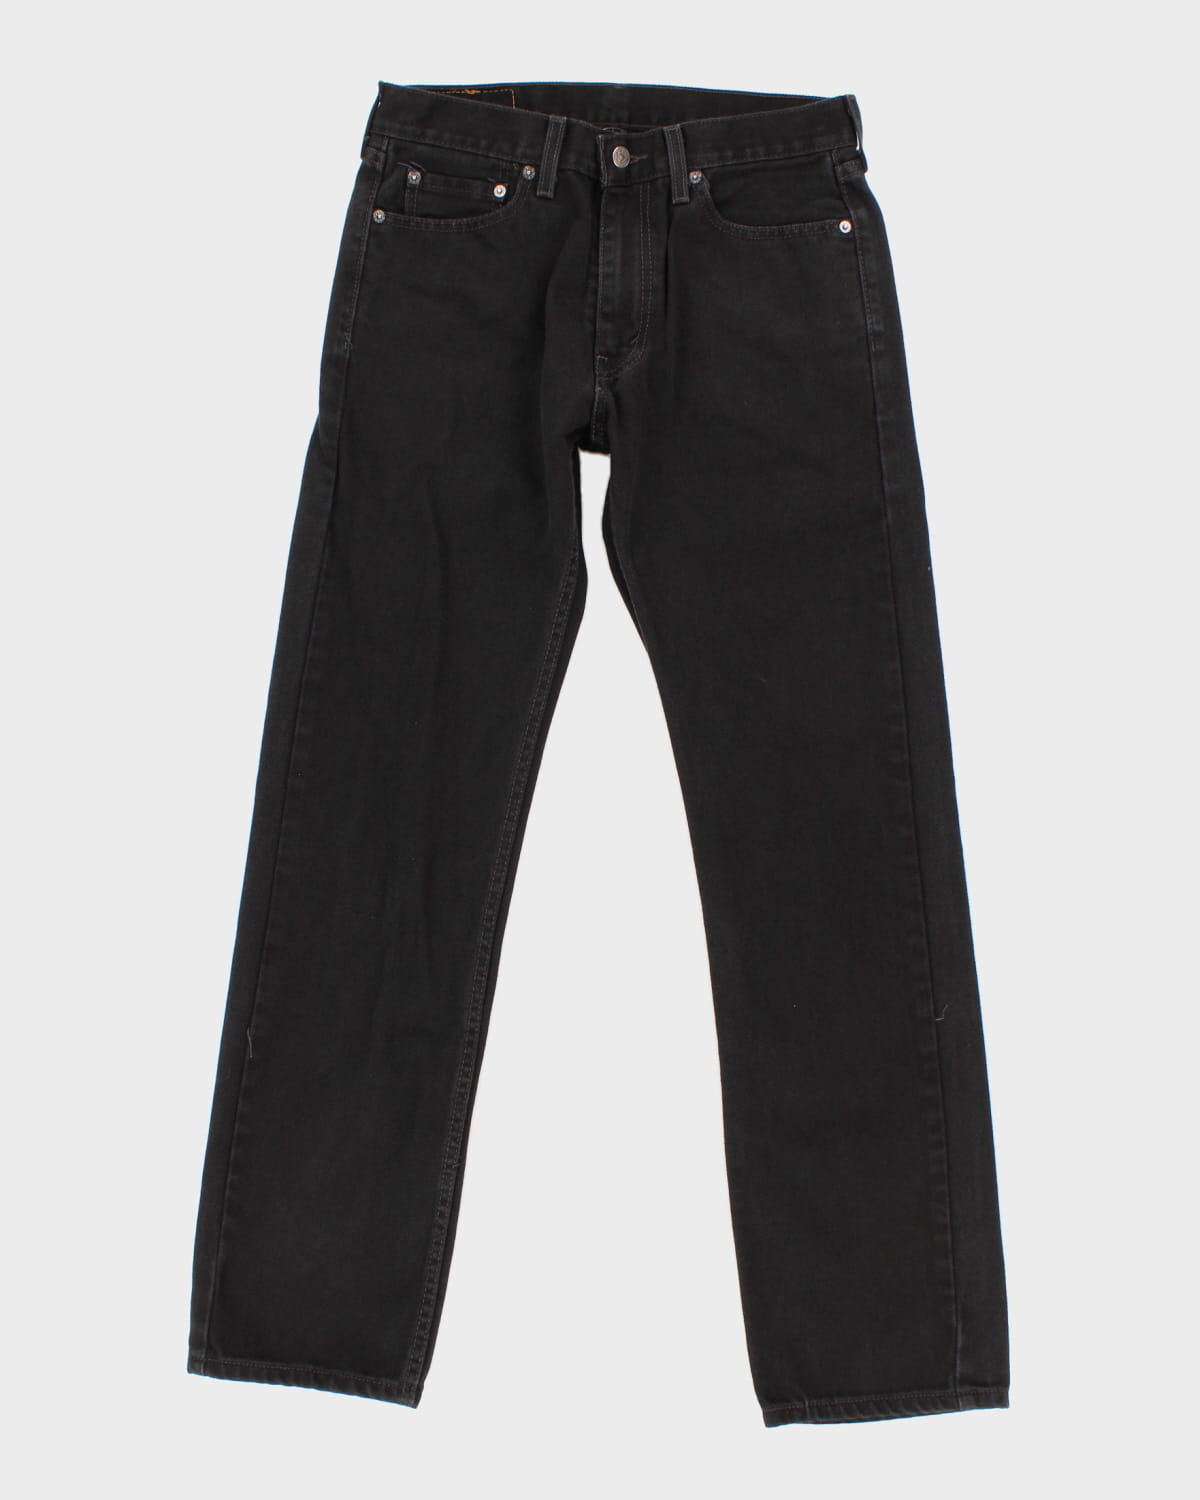 Levi's 505 Black Denim Jeans - W30 L32